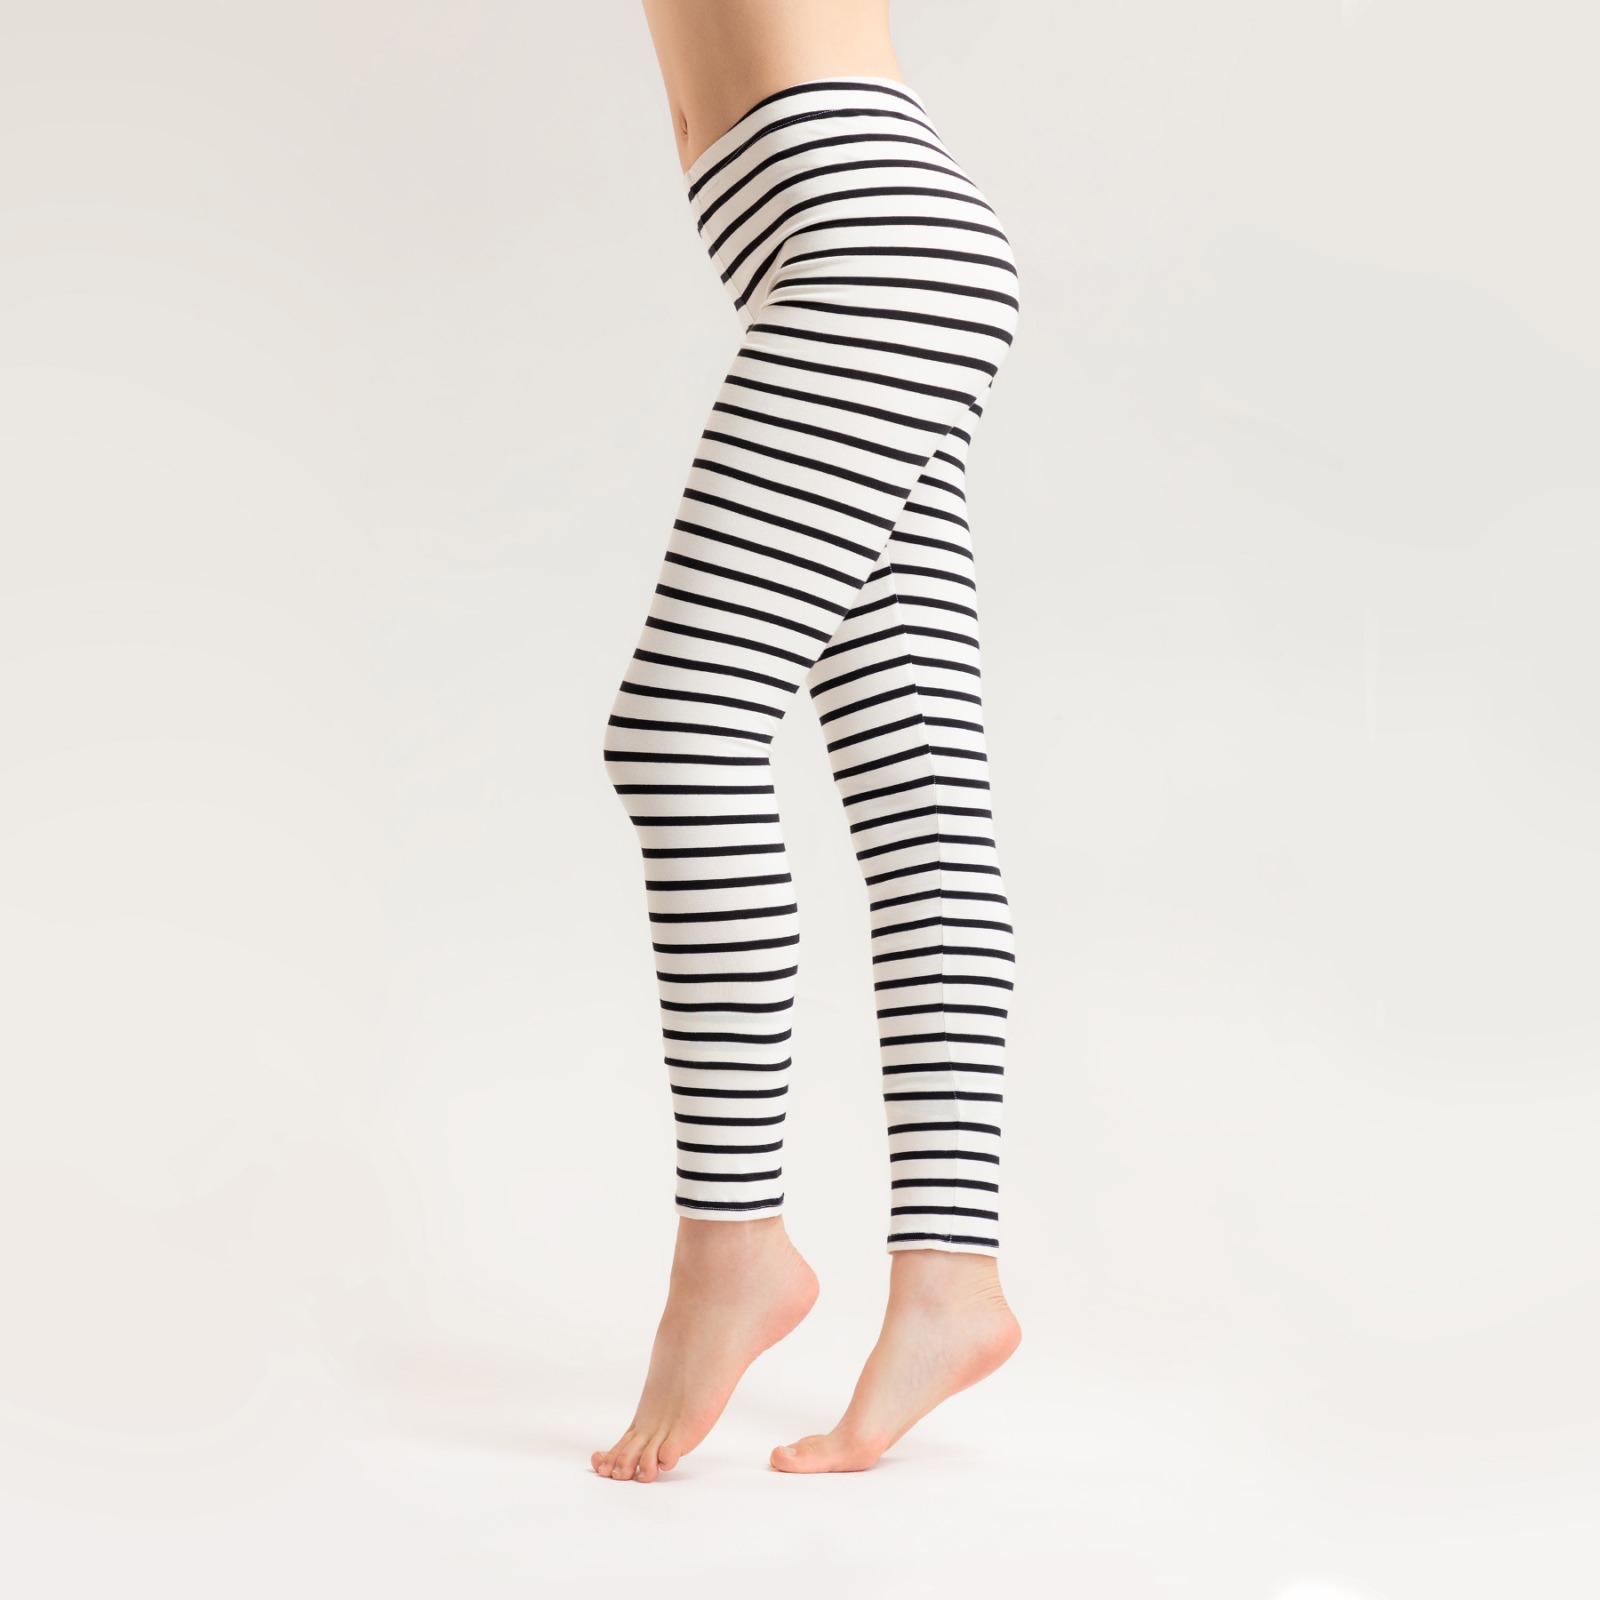 Striped leggings